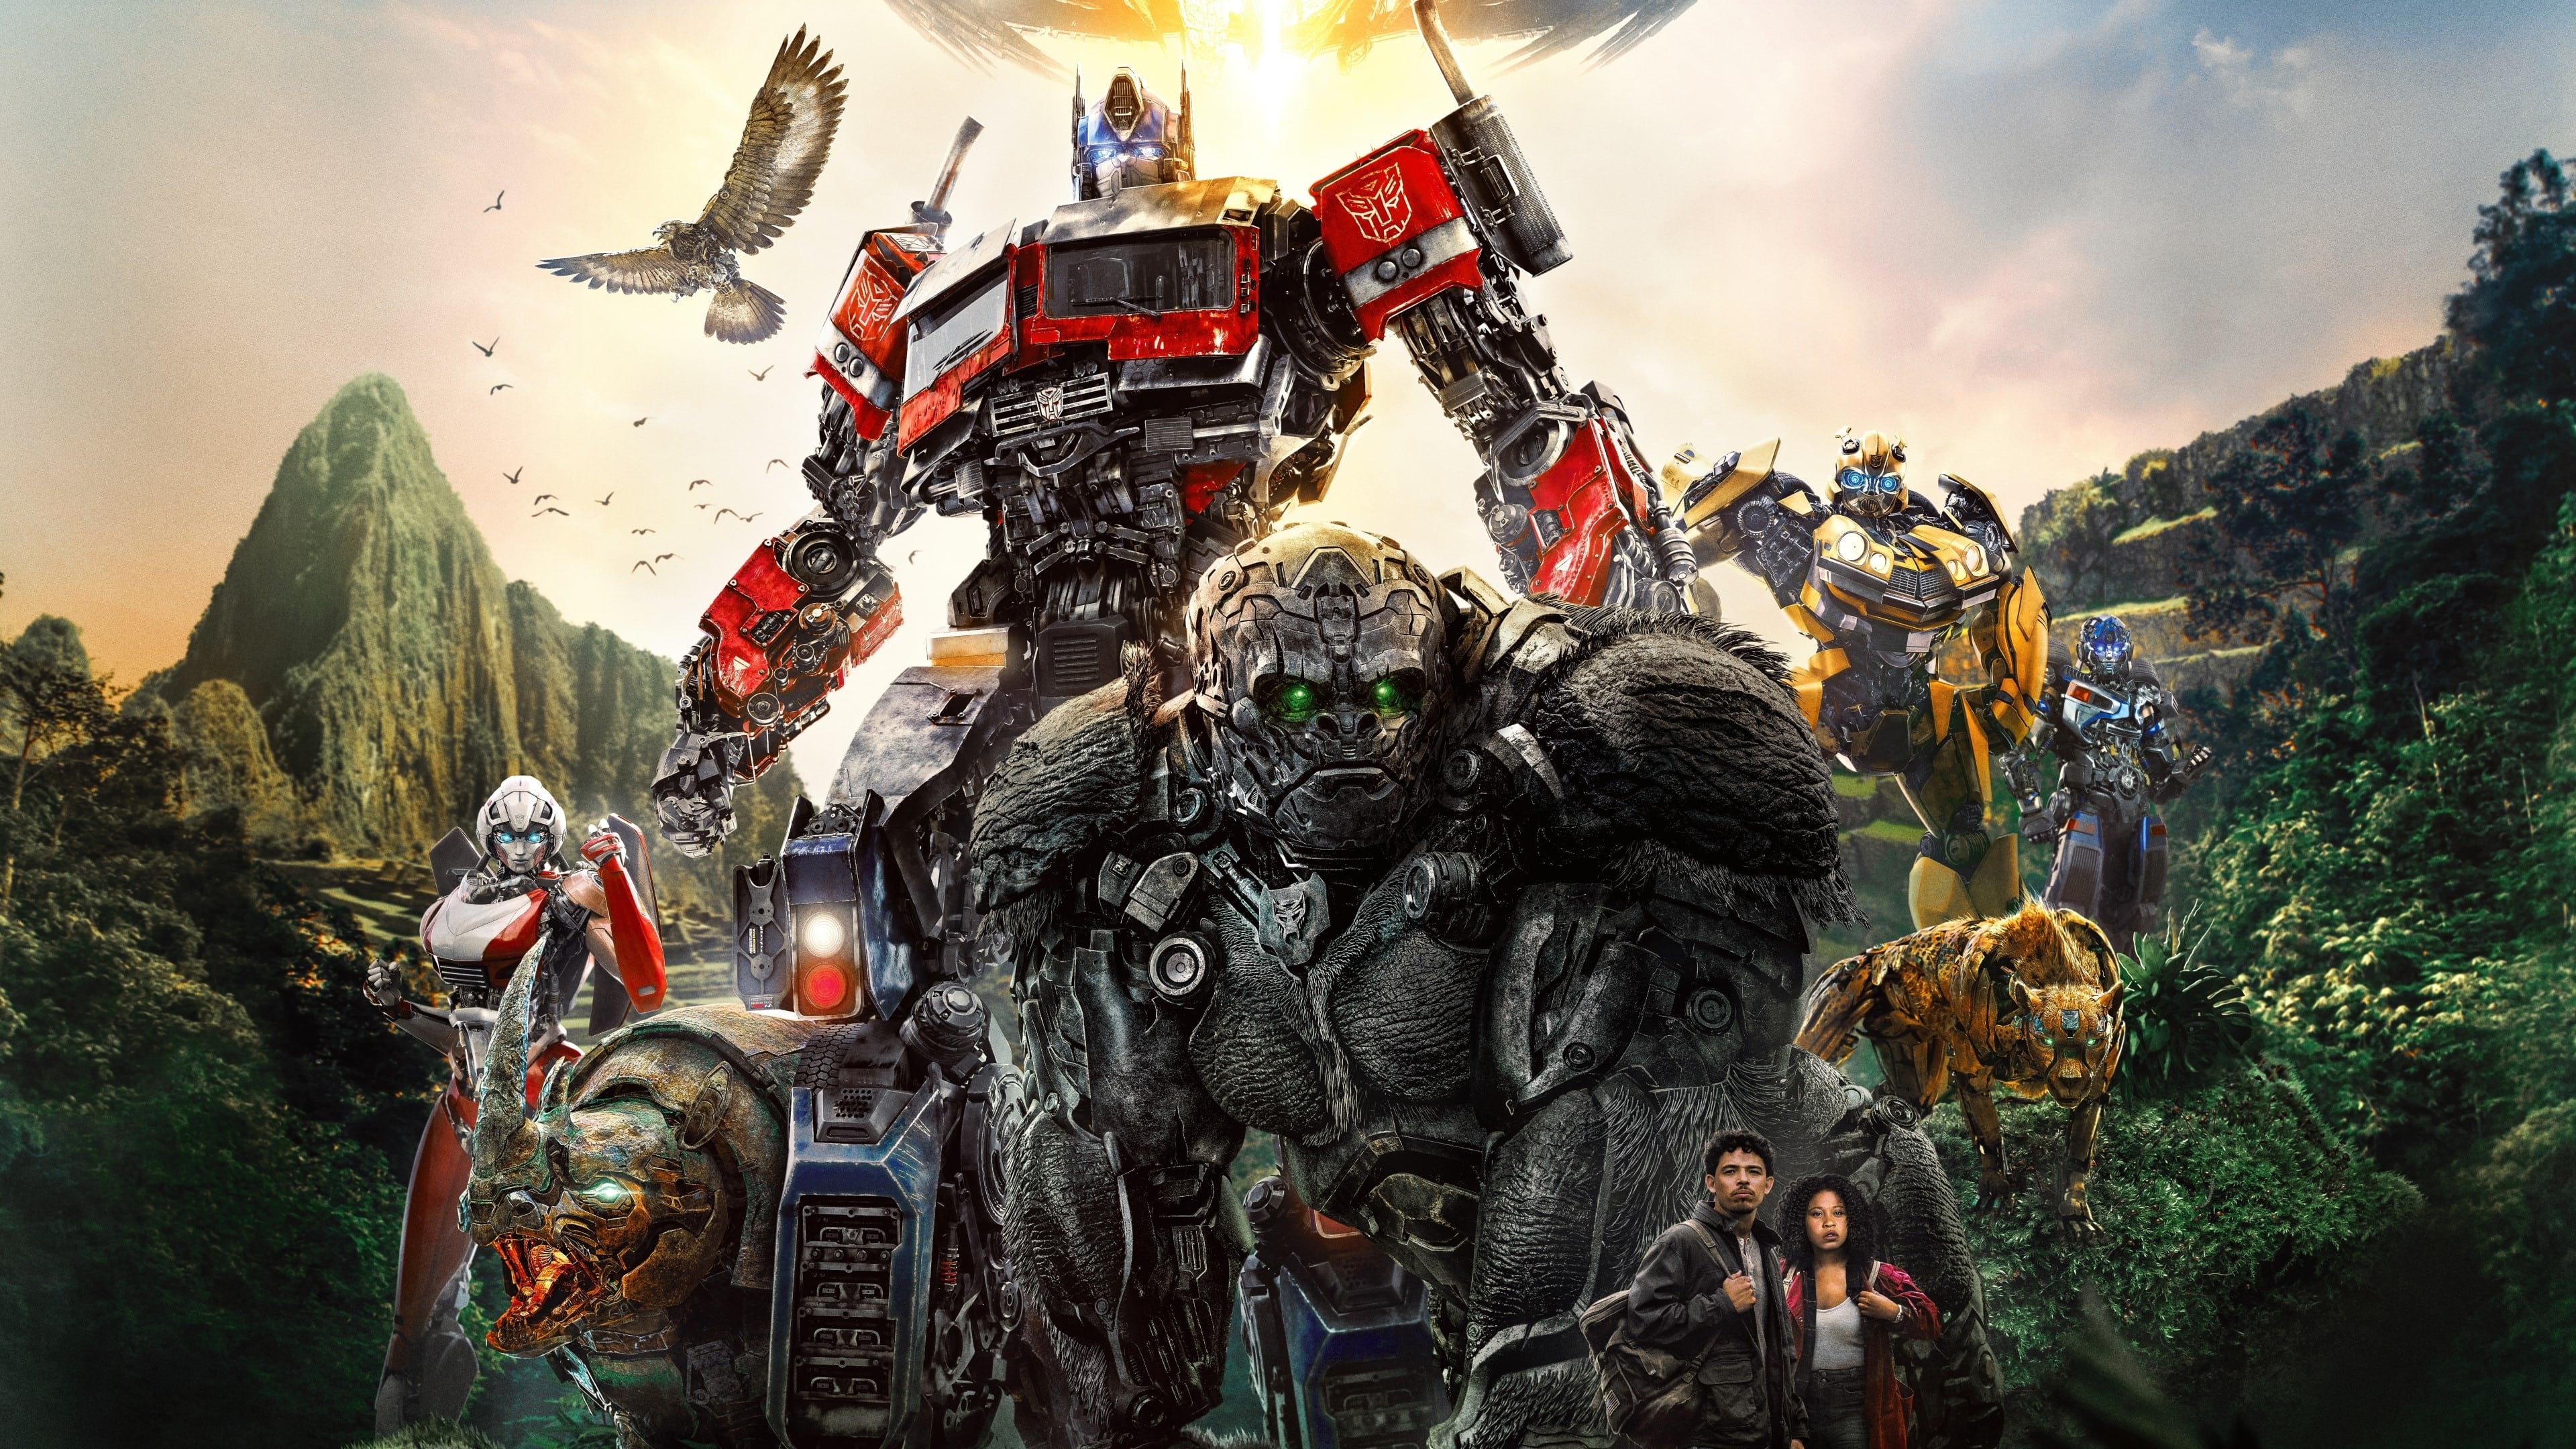 Transformers: Quái Thú Trỗi Dậy